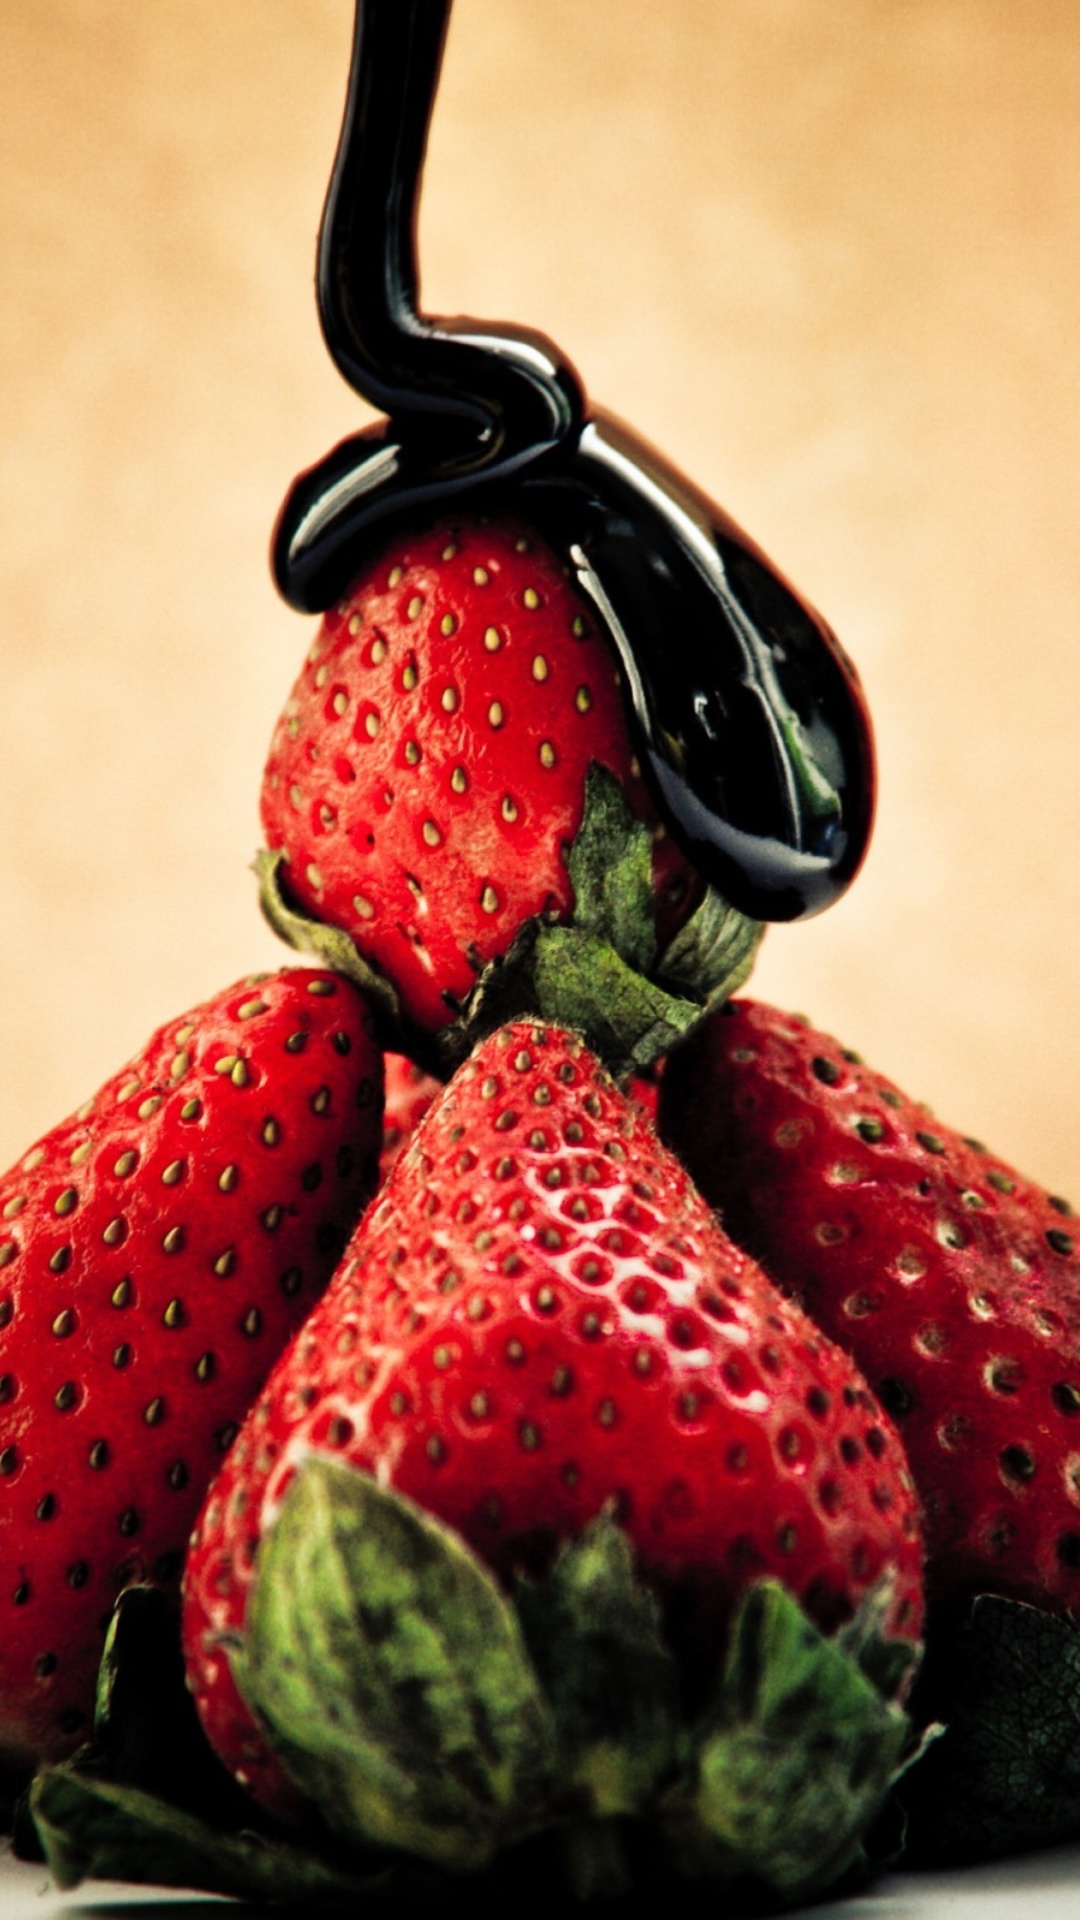 Strawberries with chocolate screenshot #1 1080x1920